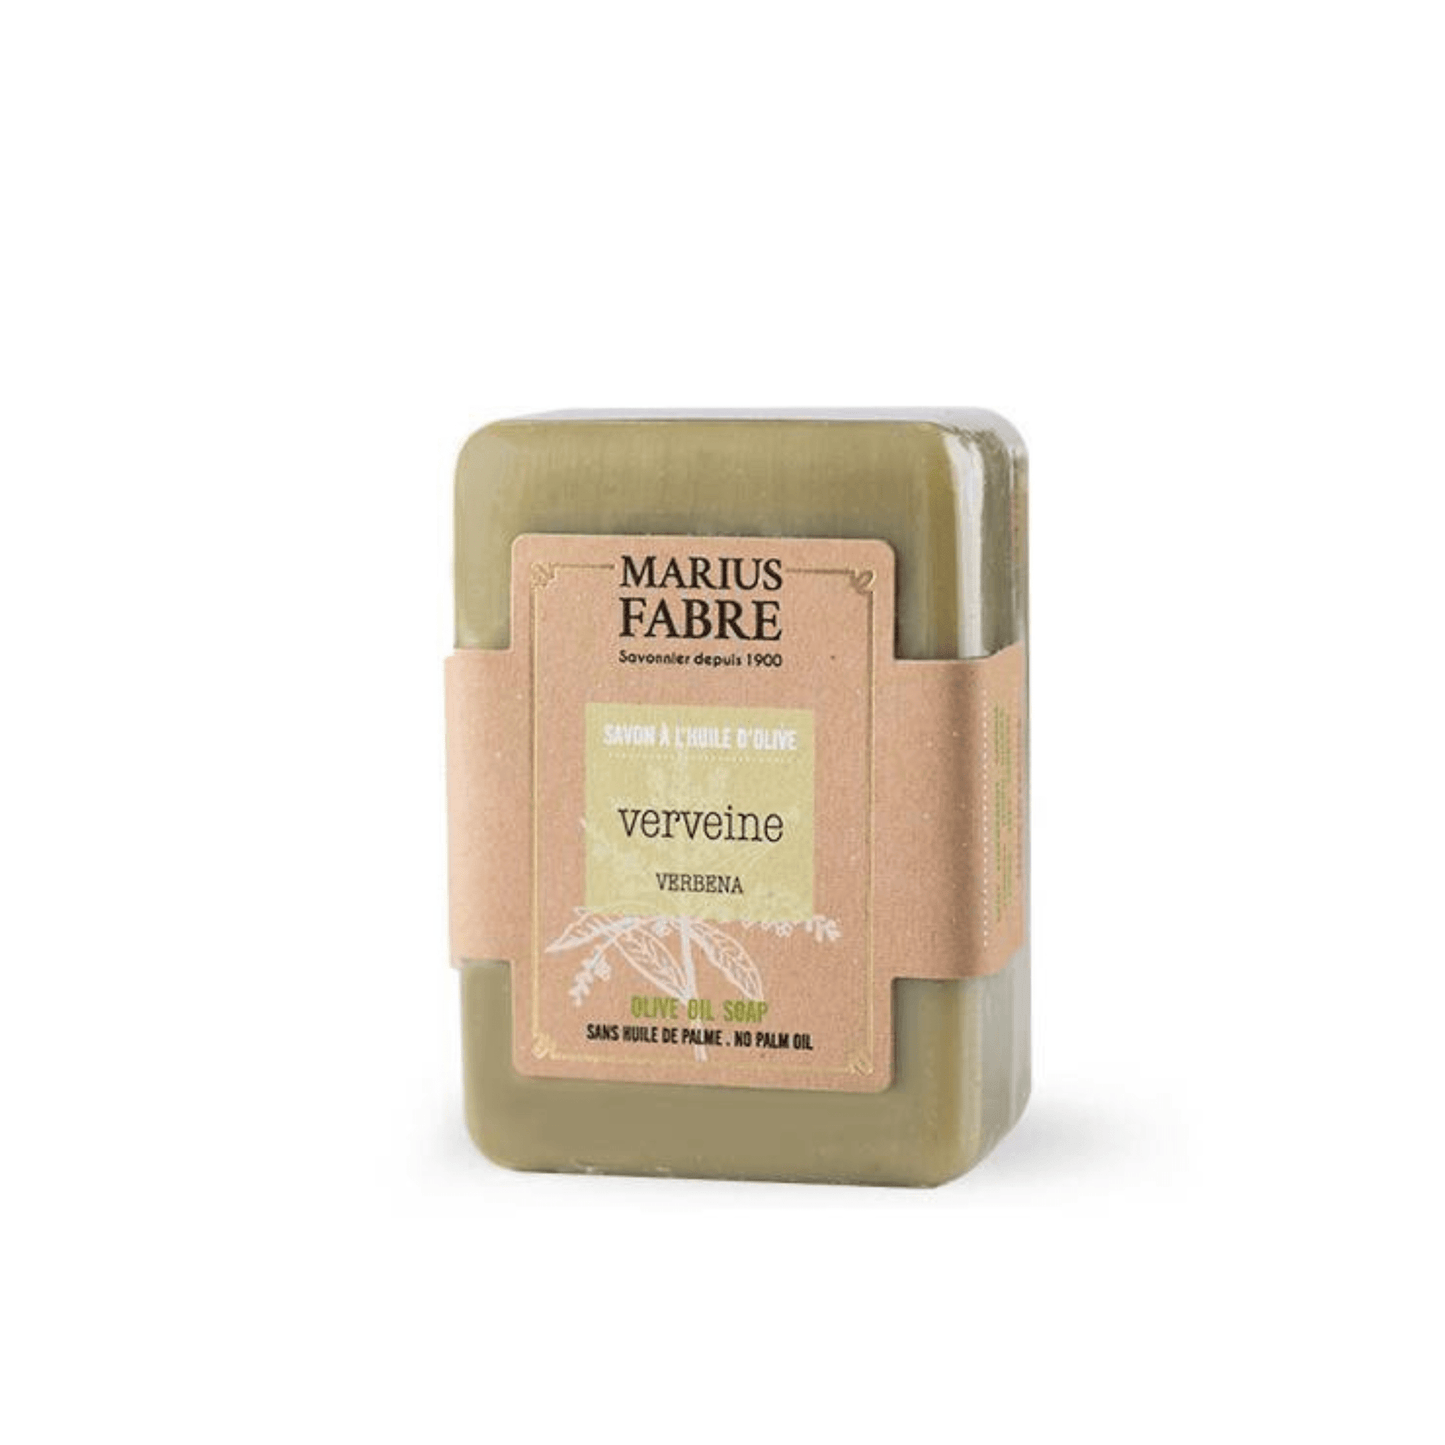 Primary Image of Olive Oil Bar Soap - Verbena